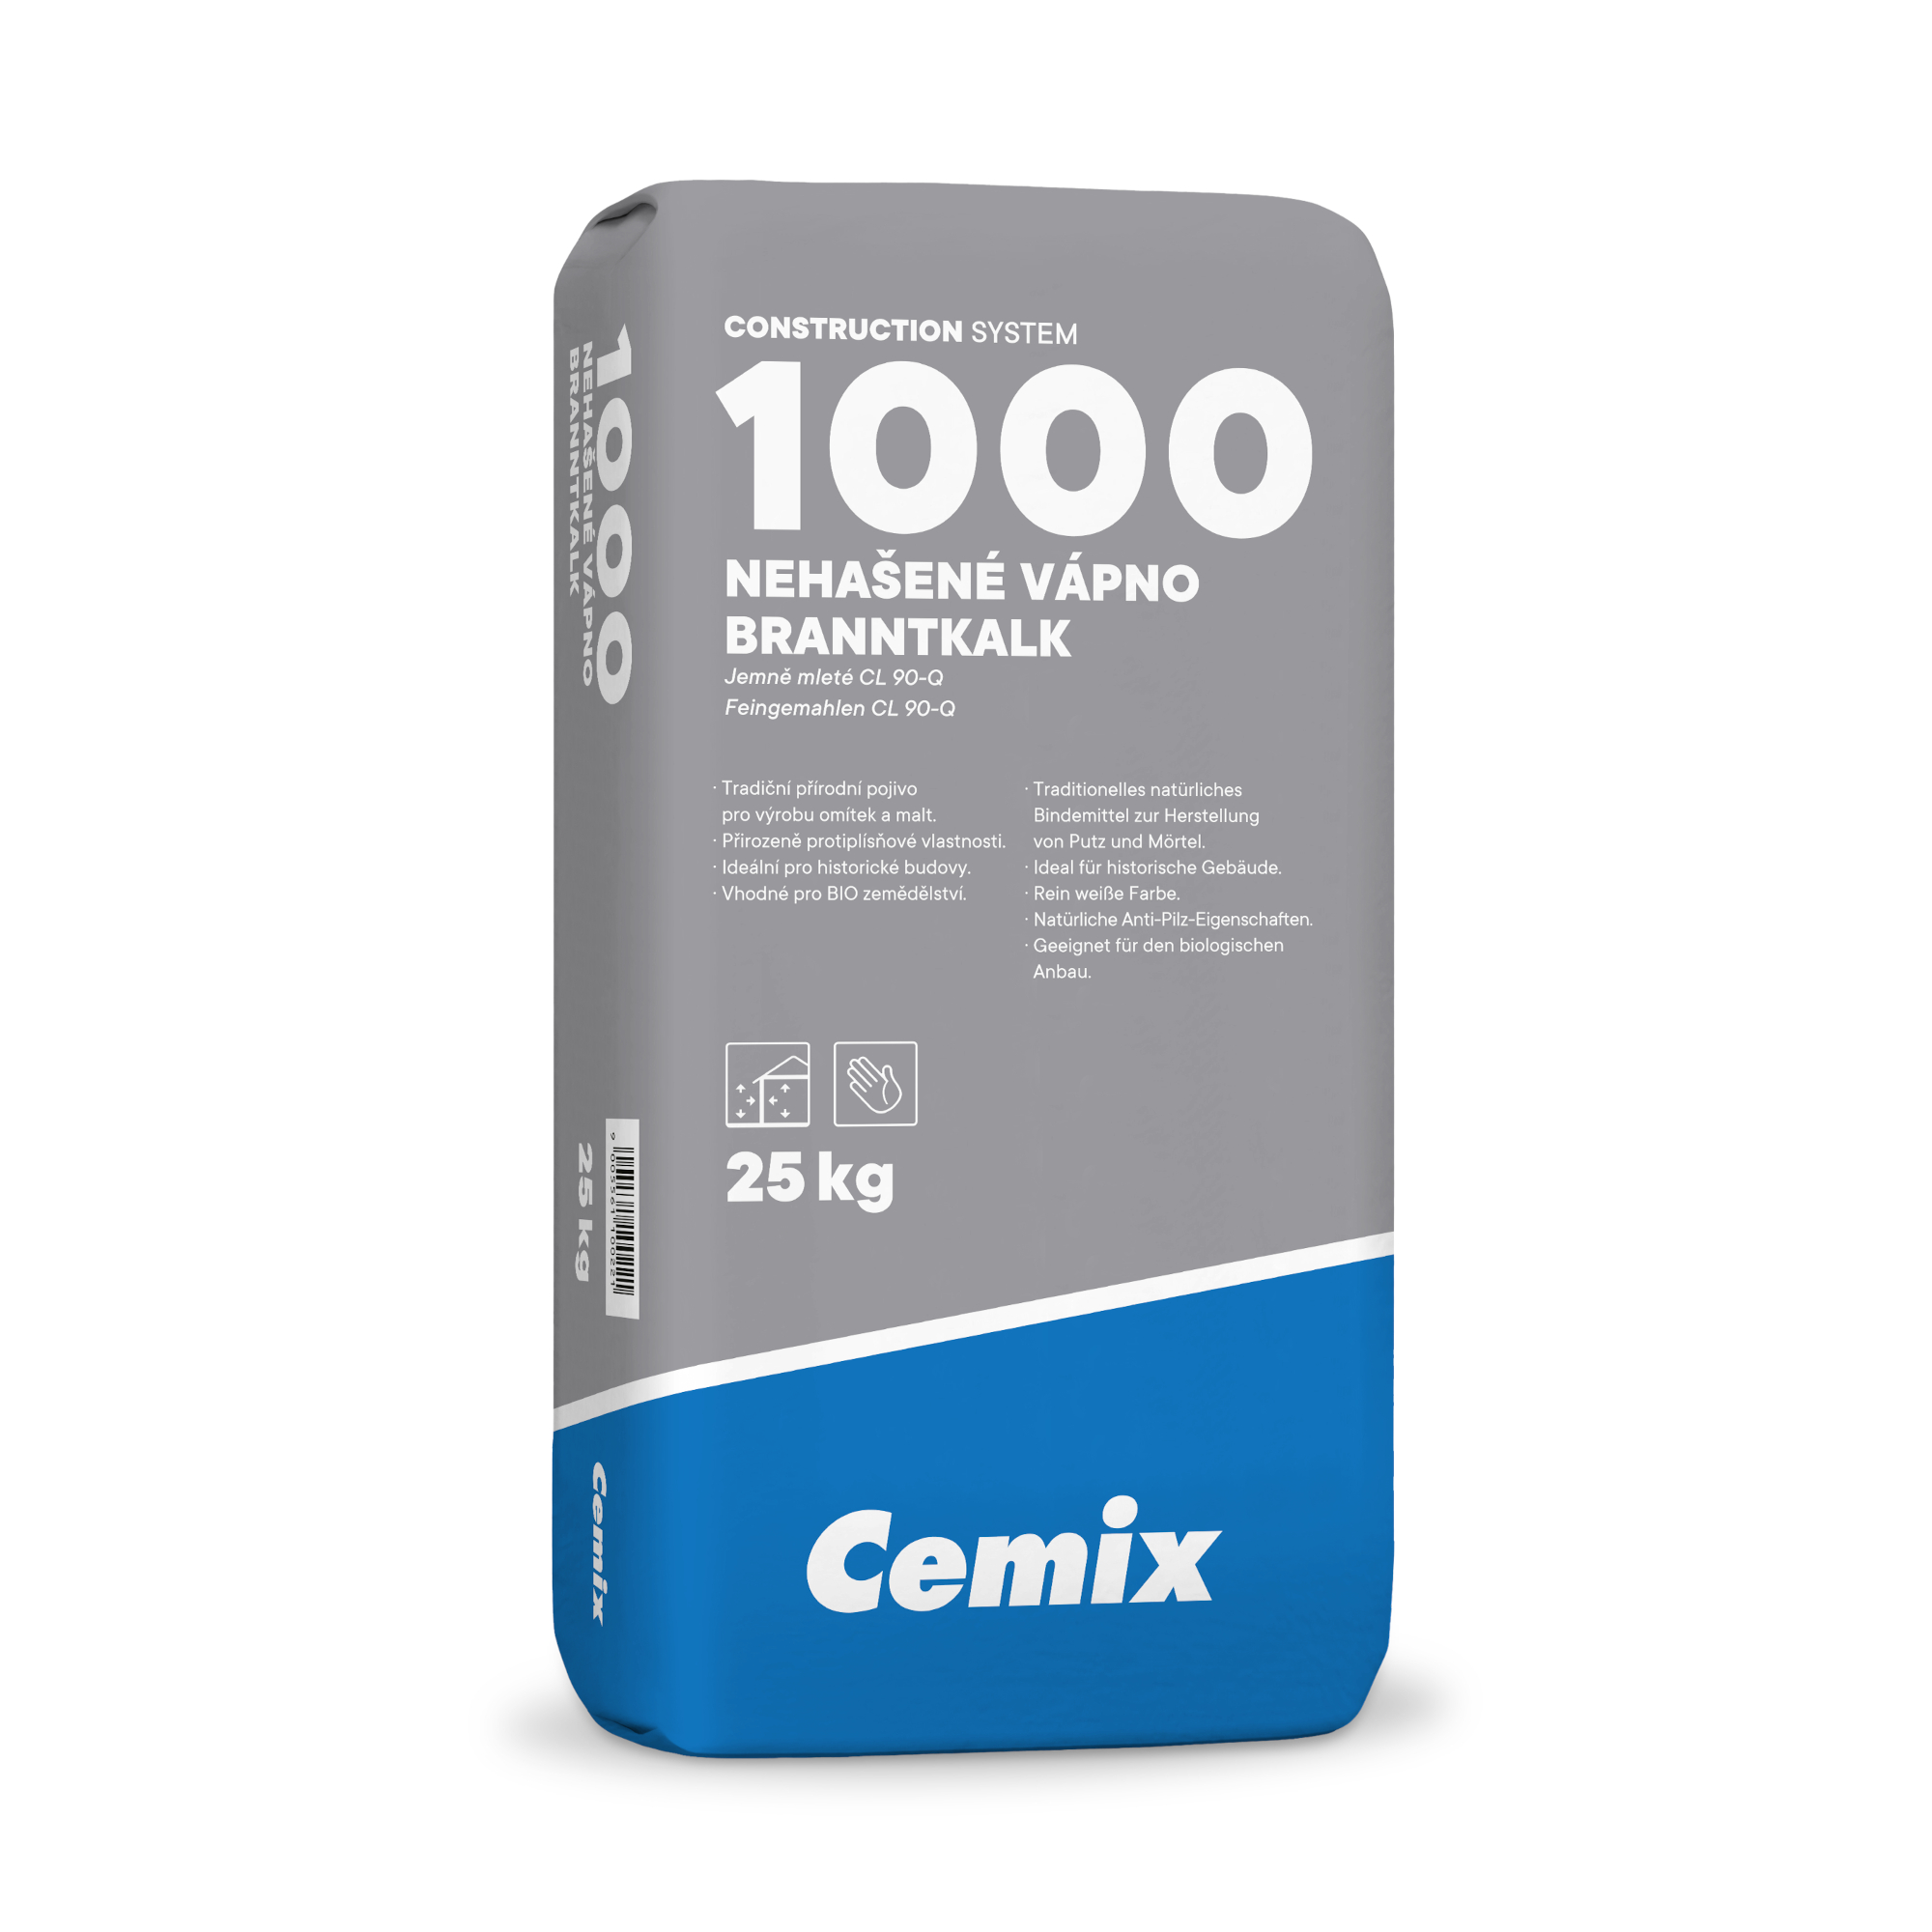 Vápno nehašené Cemix 1000 CL 90-Q 25 kg Cemix